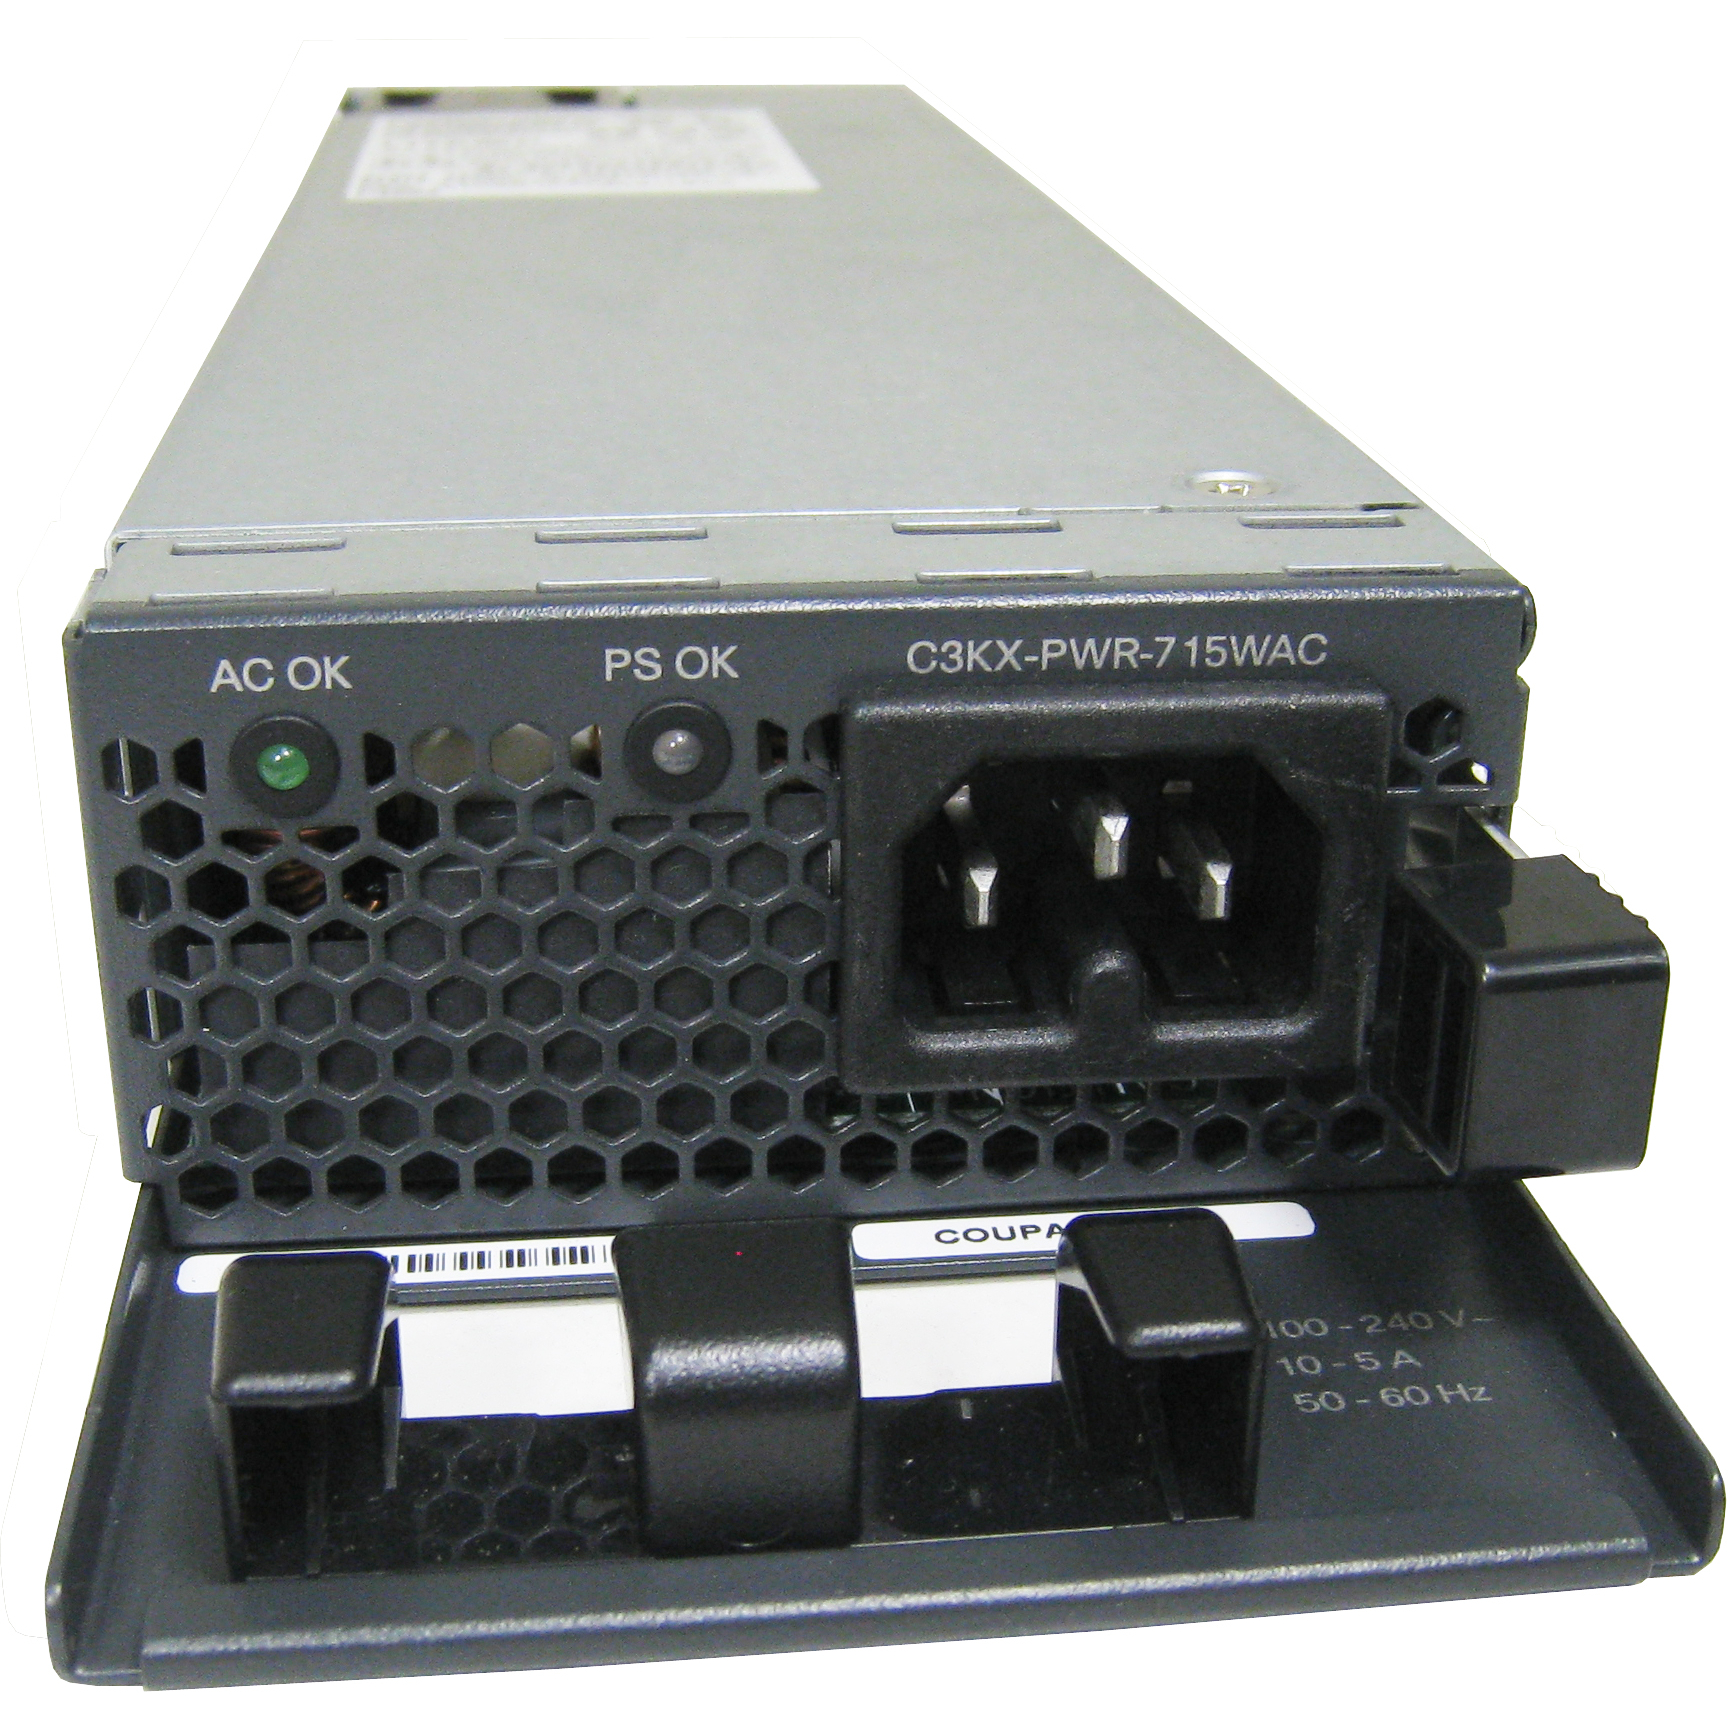 Cisco C3KX-PWR-715WAC